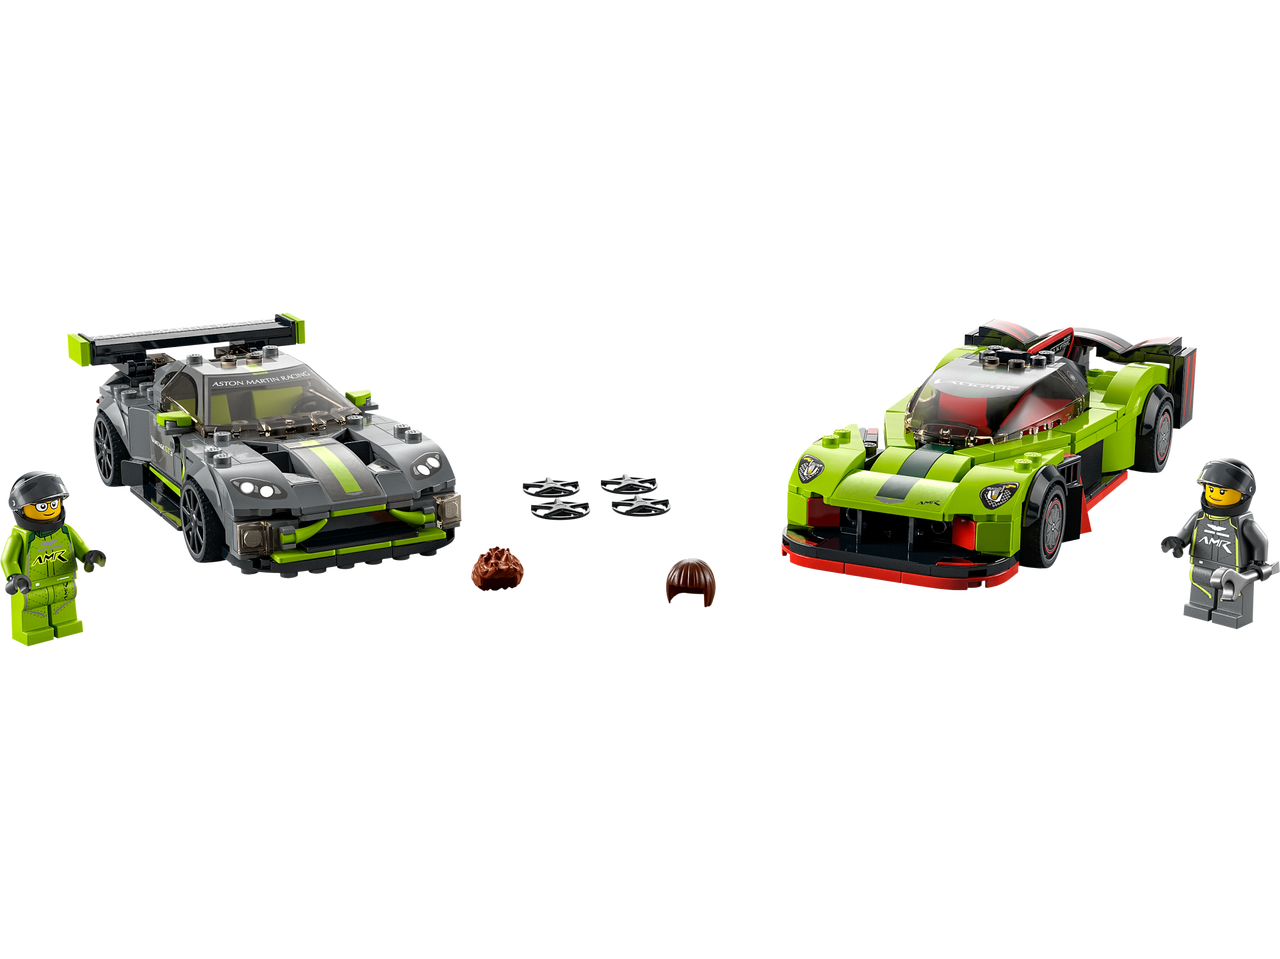 LEGO® 76910 Speed Champions Aston Martin Valkyrie AMR Pro en Aston Martin Vantage GT3